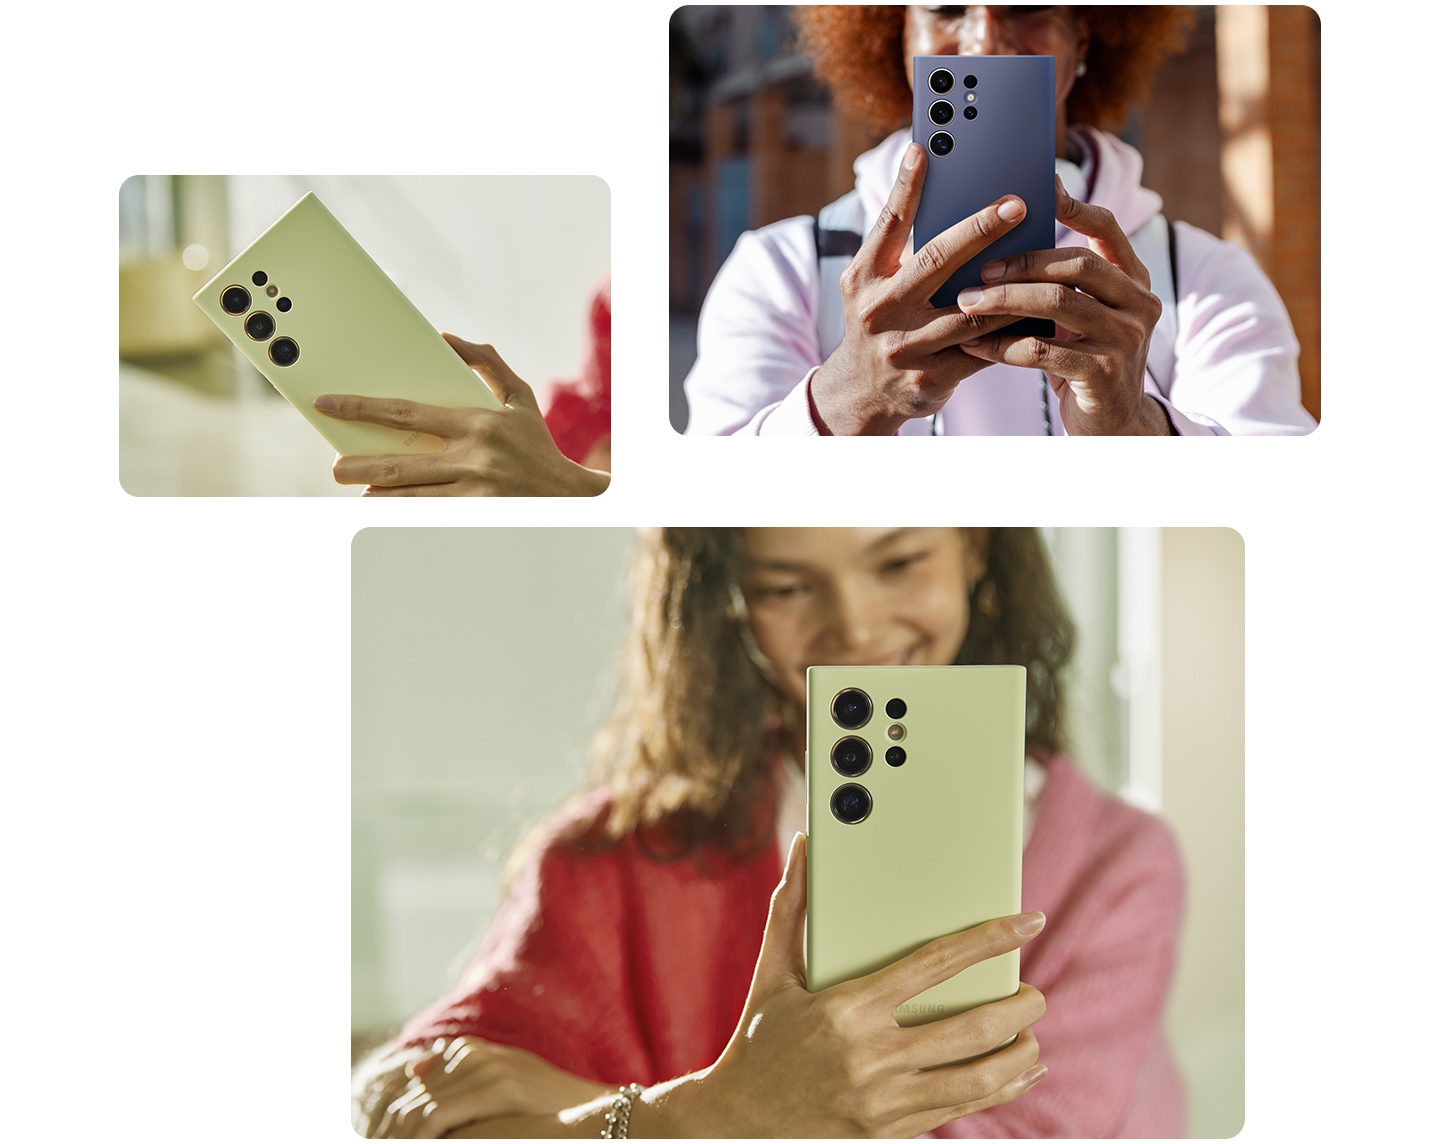 En la parte superior izquierda, una mujer sostiene cómodamente el smartphone Galaxy S24 en una funda de silicona violeta. A continuación, dos tomas diferentes muestran a una persona sosteniendo con una mano un teléfono movil Galaxy S24 Plus en una funda de silicona amarilla, lo que muestra la facilidad de agarre.